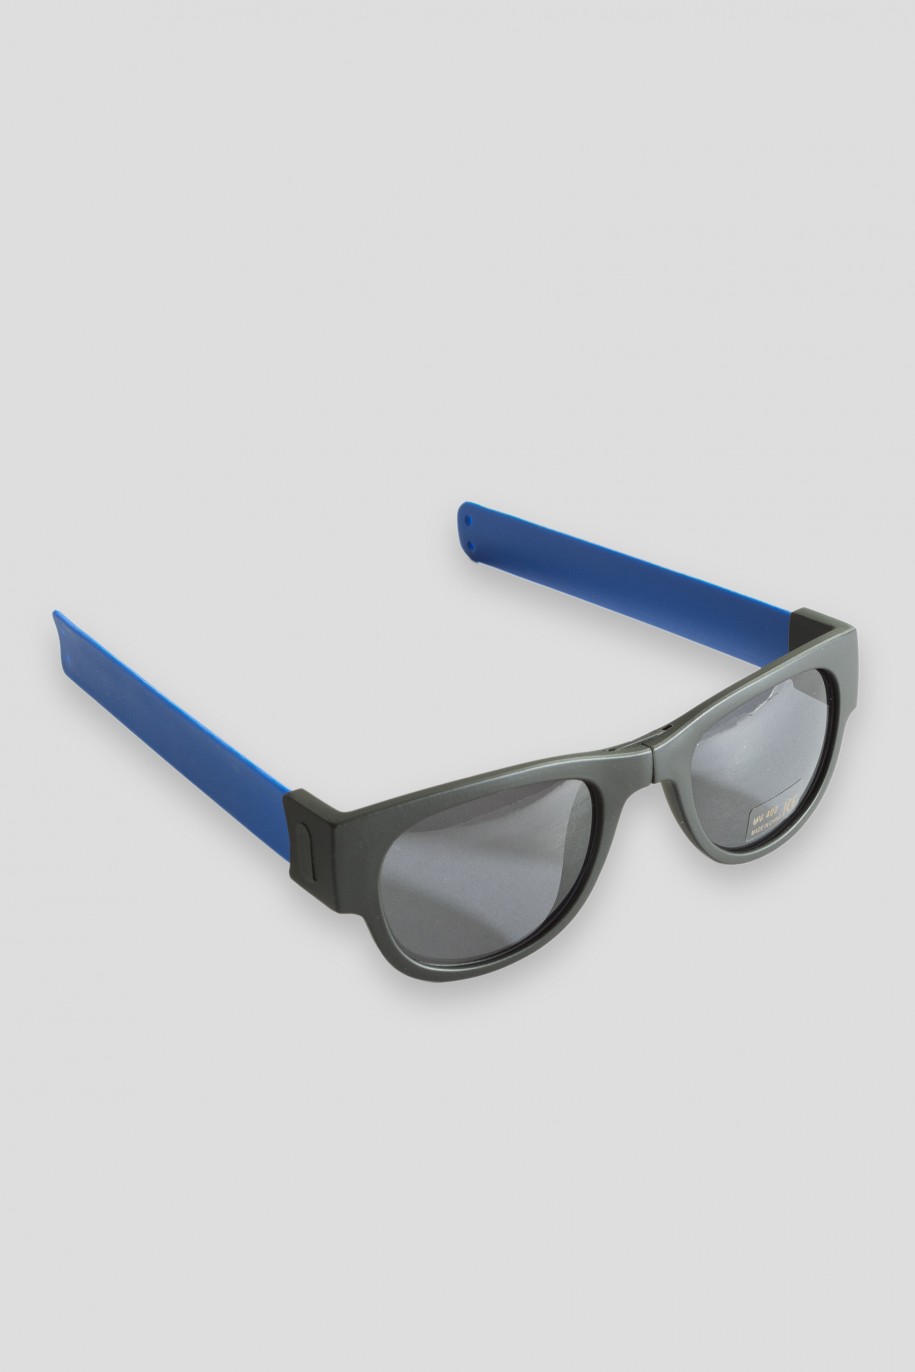 Niebieskie składane okulary przeciwsłoneczne - 34853